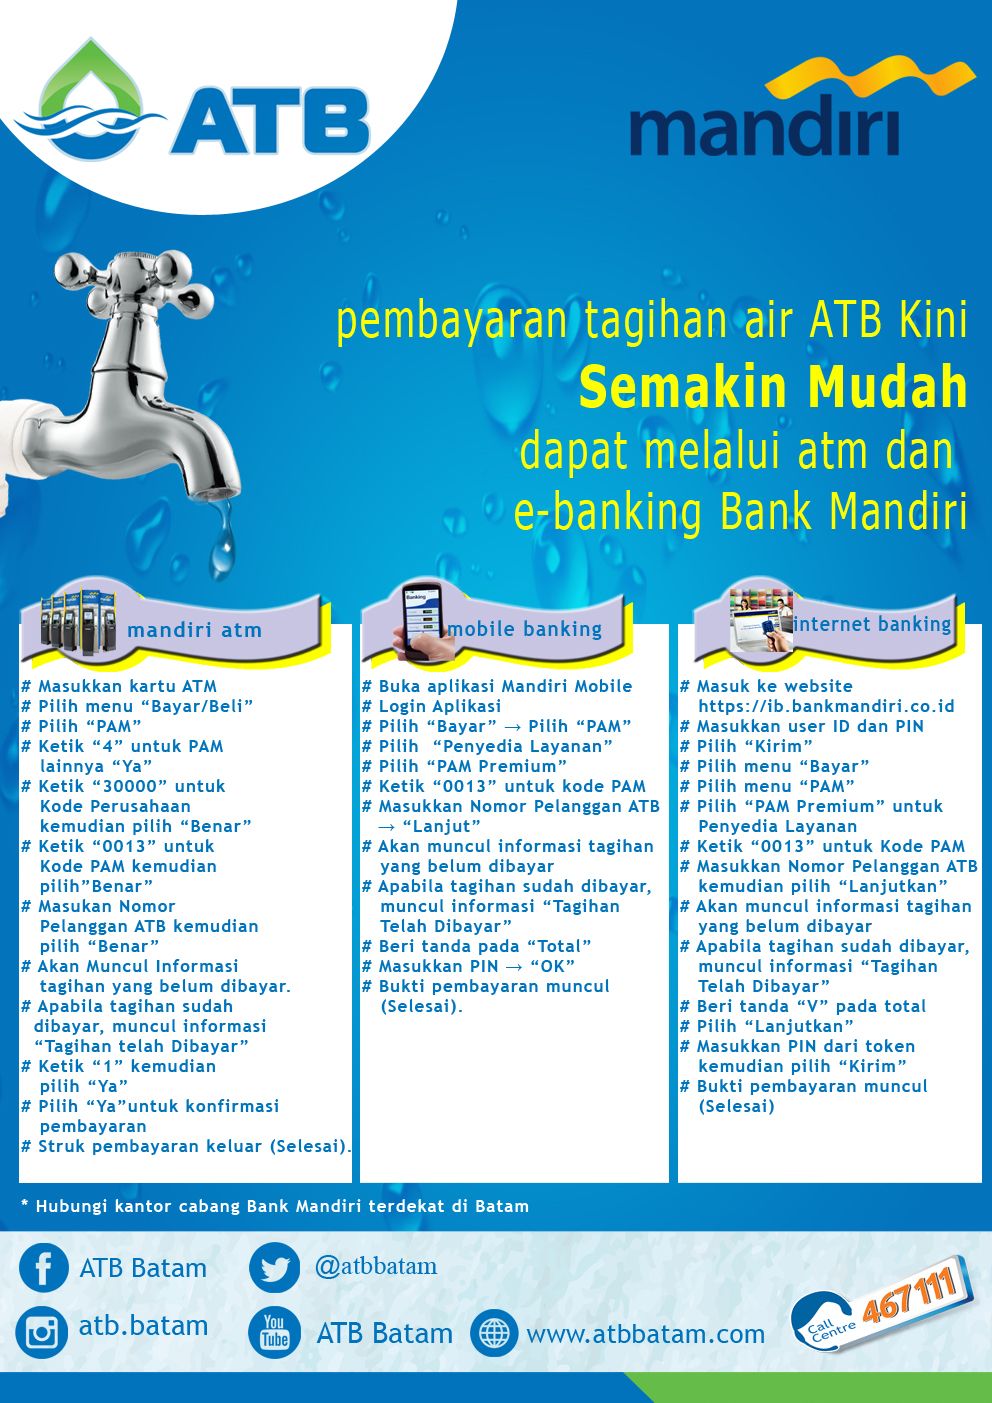 Cara membayar tagihan ATB via Bank Mandiri.